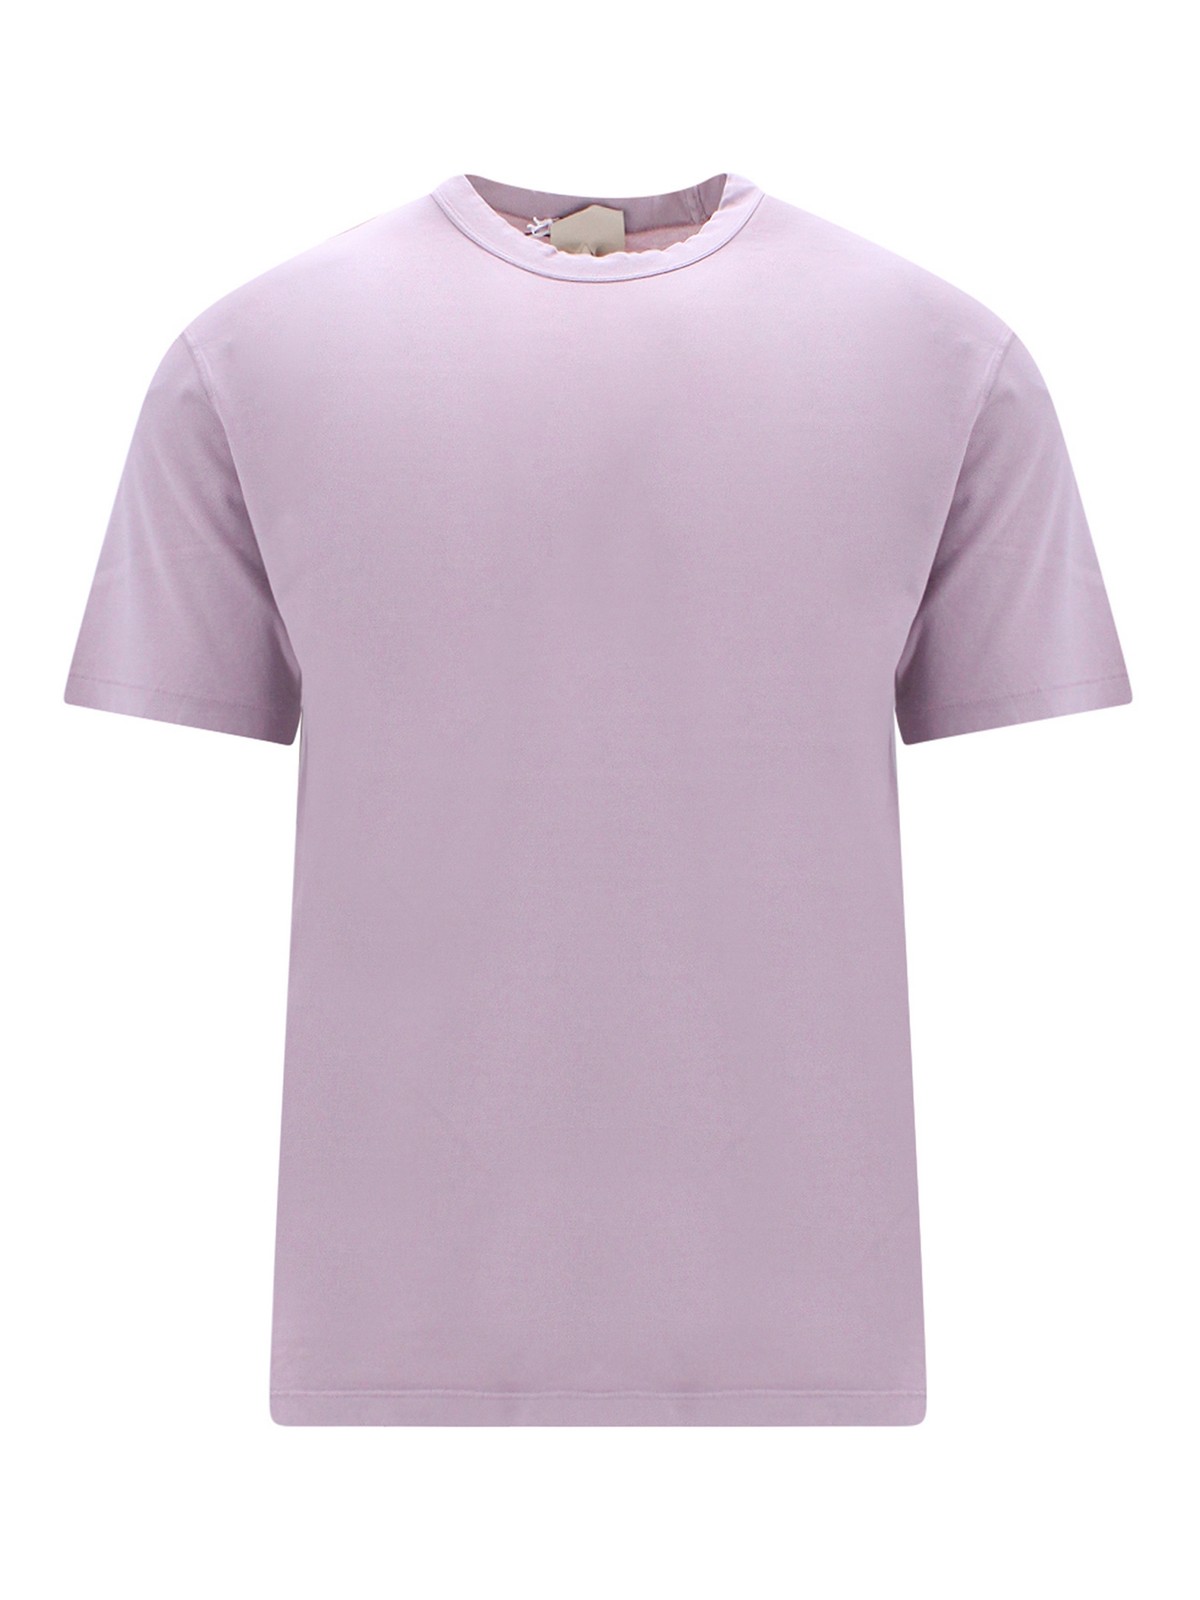 Shop Ten C Camiseta - Color Carne Y Neutral In Nude & Neutrals